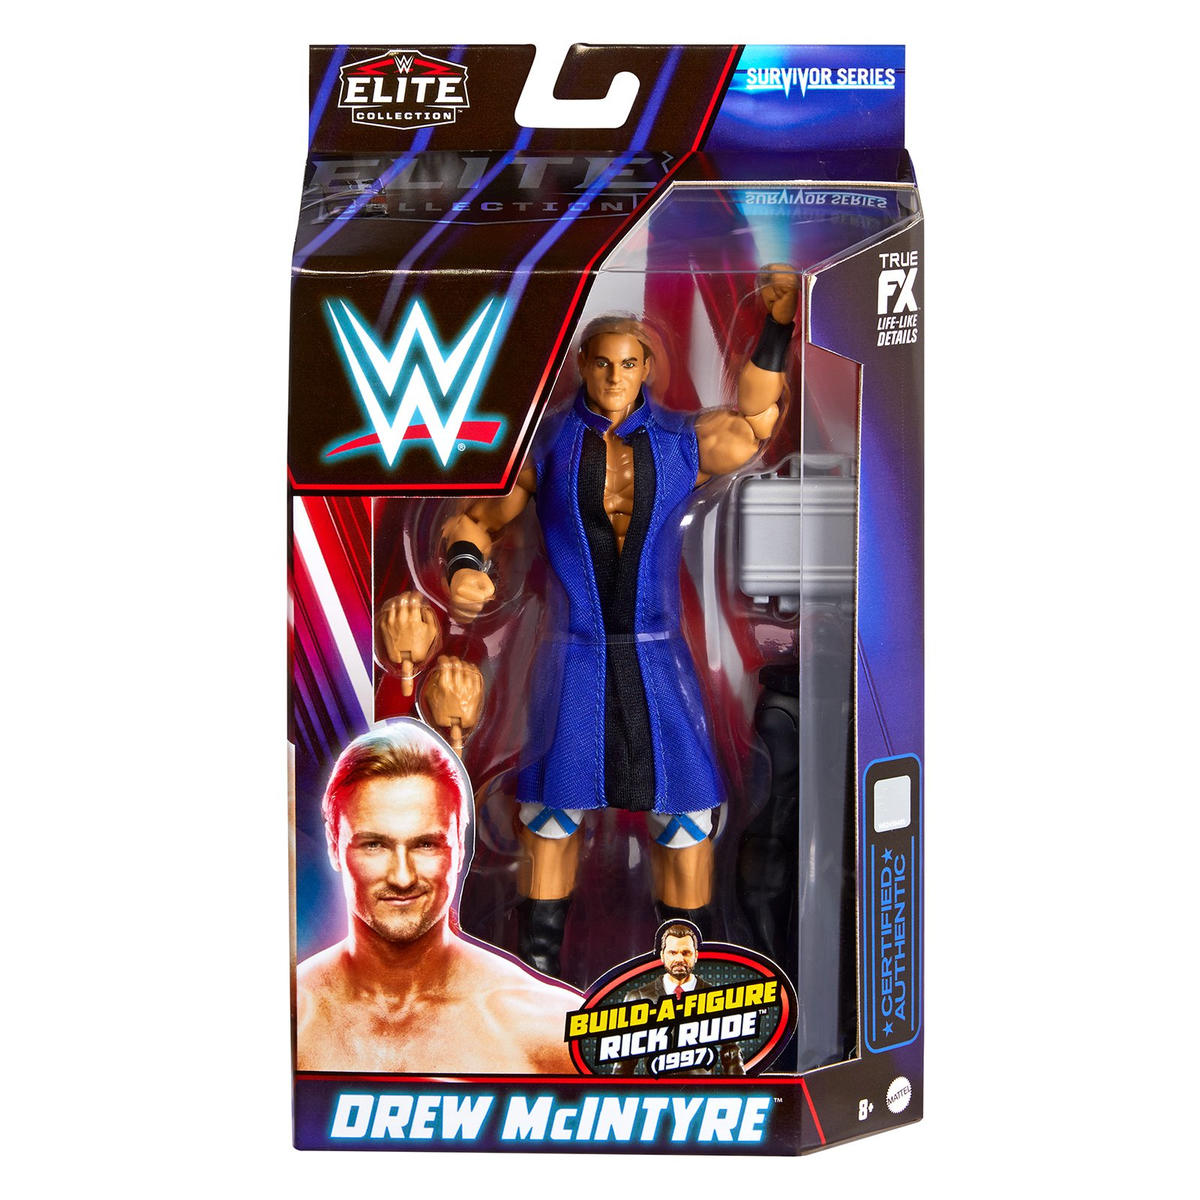 2022 WWE Mattel Elite Collection Survivor Series 5 Drew McIntyre